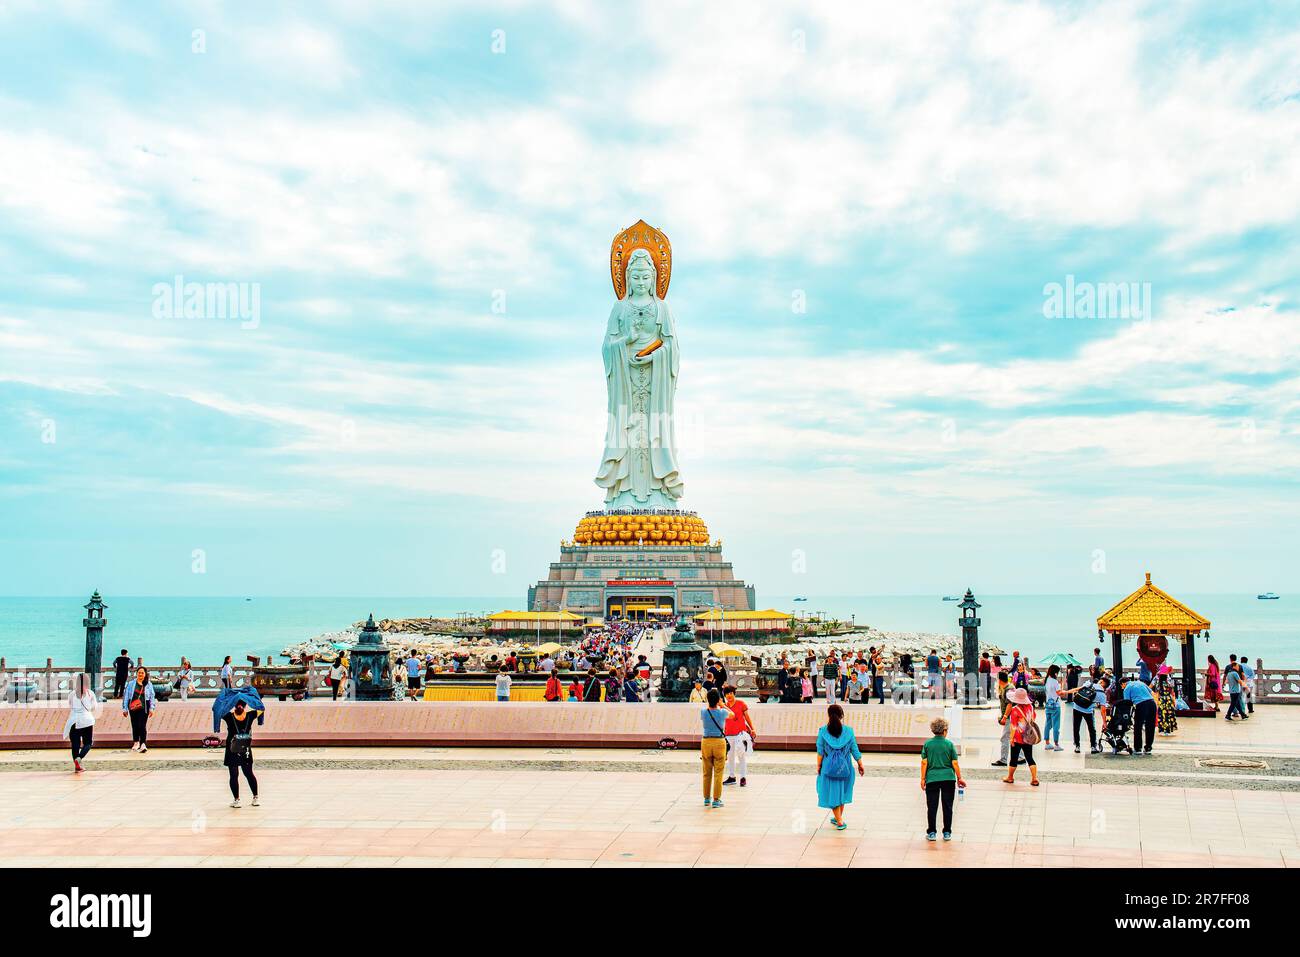 Sanya, île de Hainan, Chine- 26 novembre 2018 : statue de la déesse Guanyin sur le territoire du Parc de la culture bouddhiste de Nanshan Banque D'Images